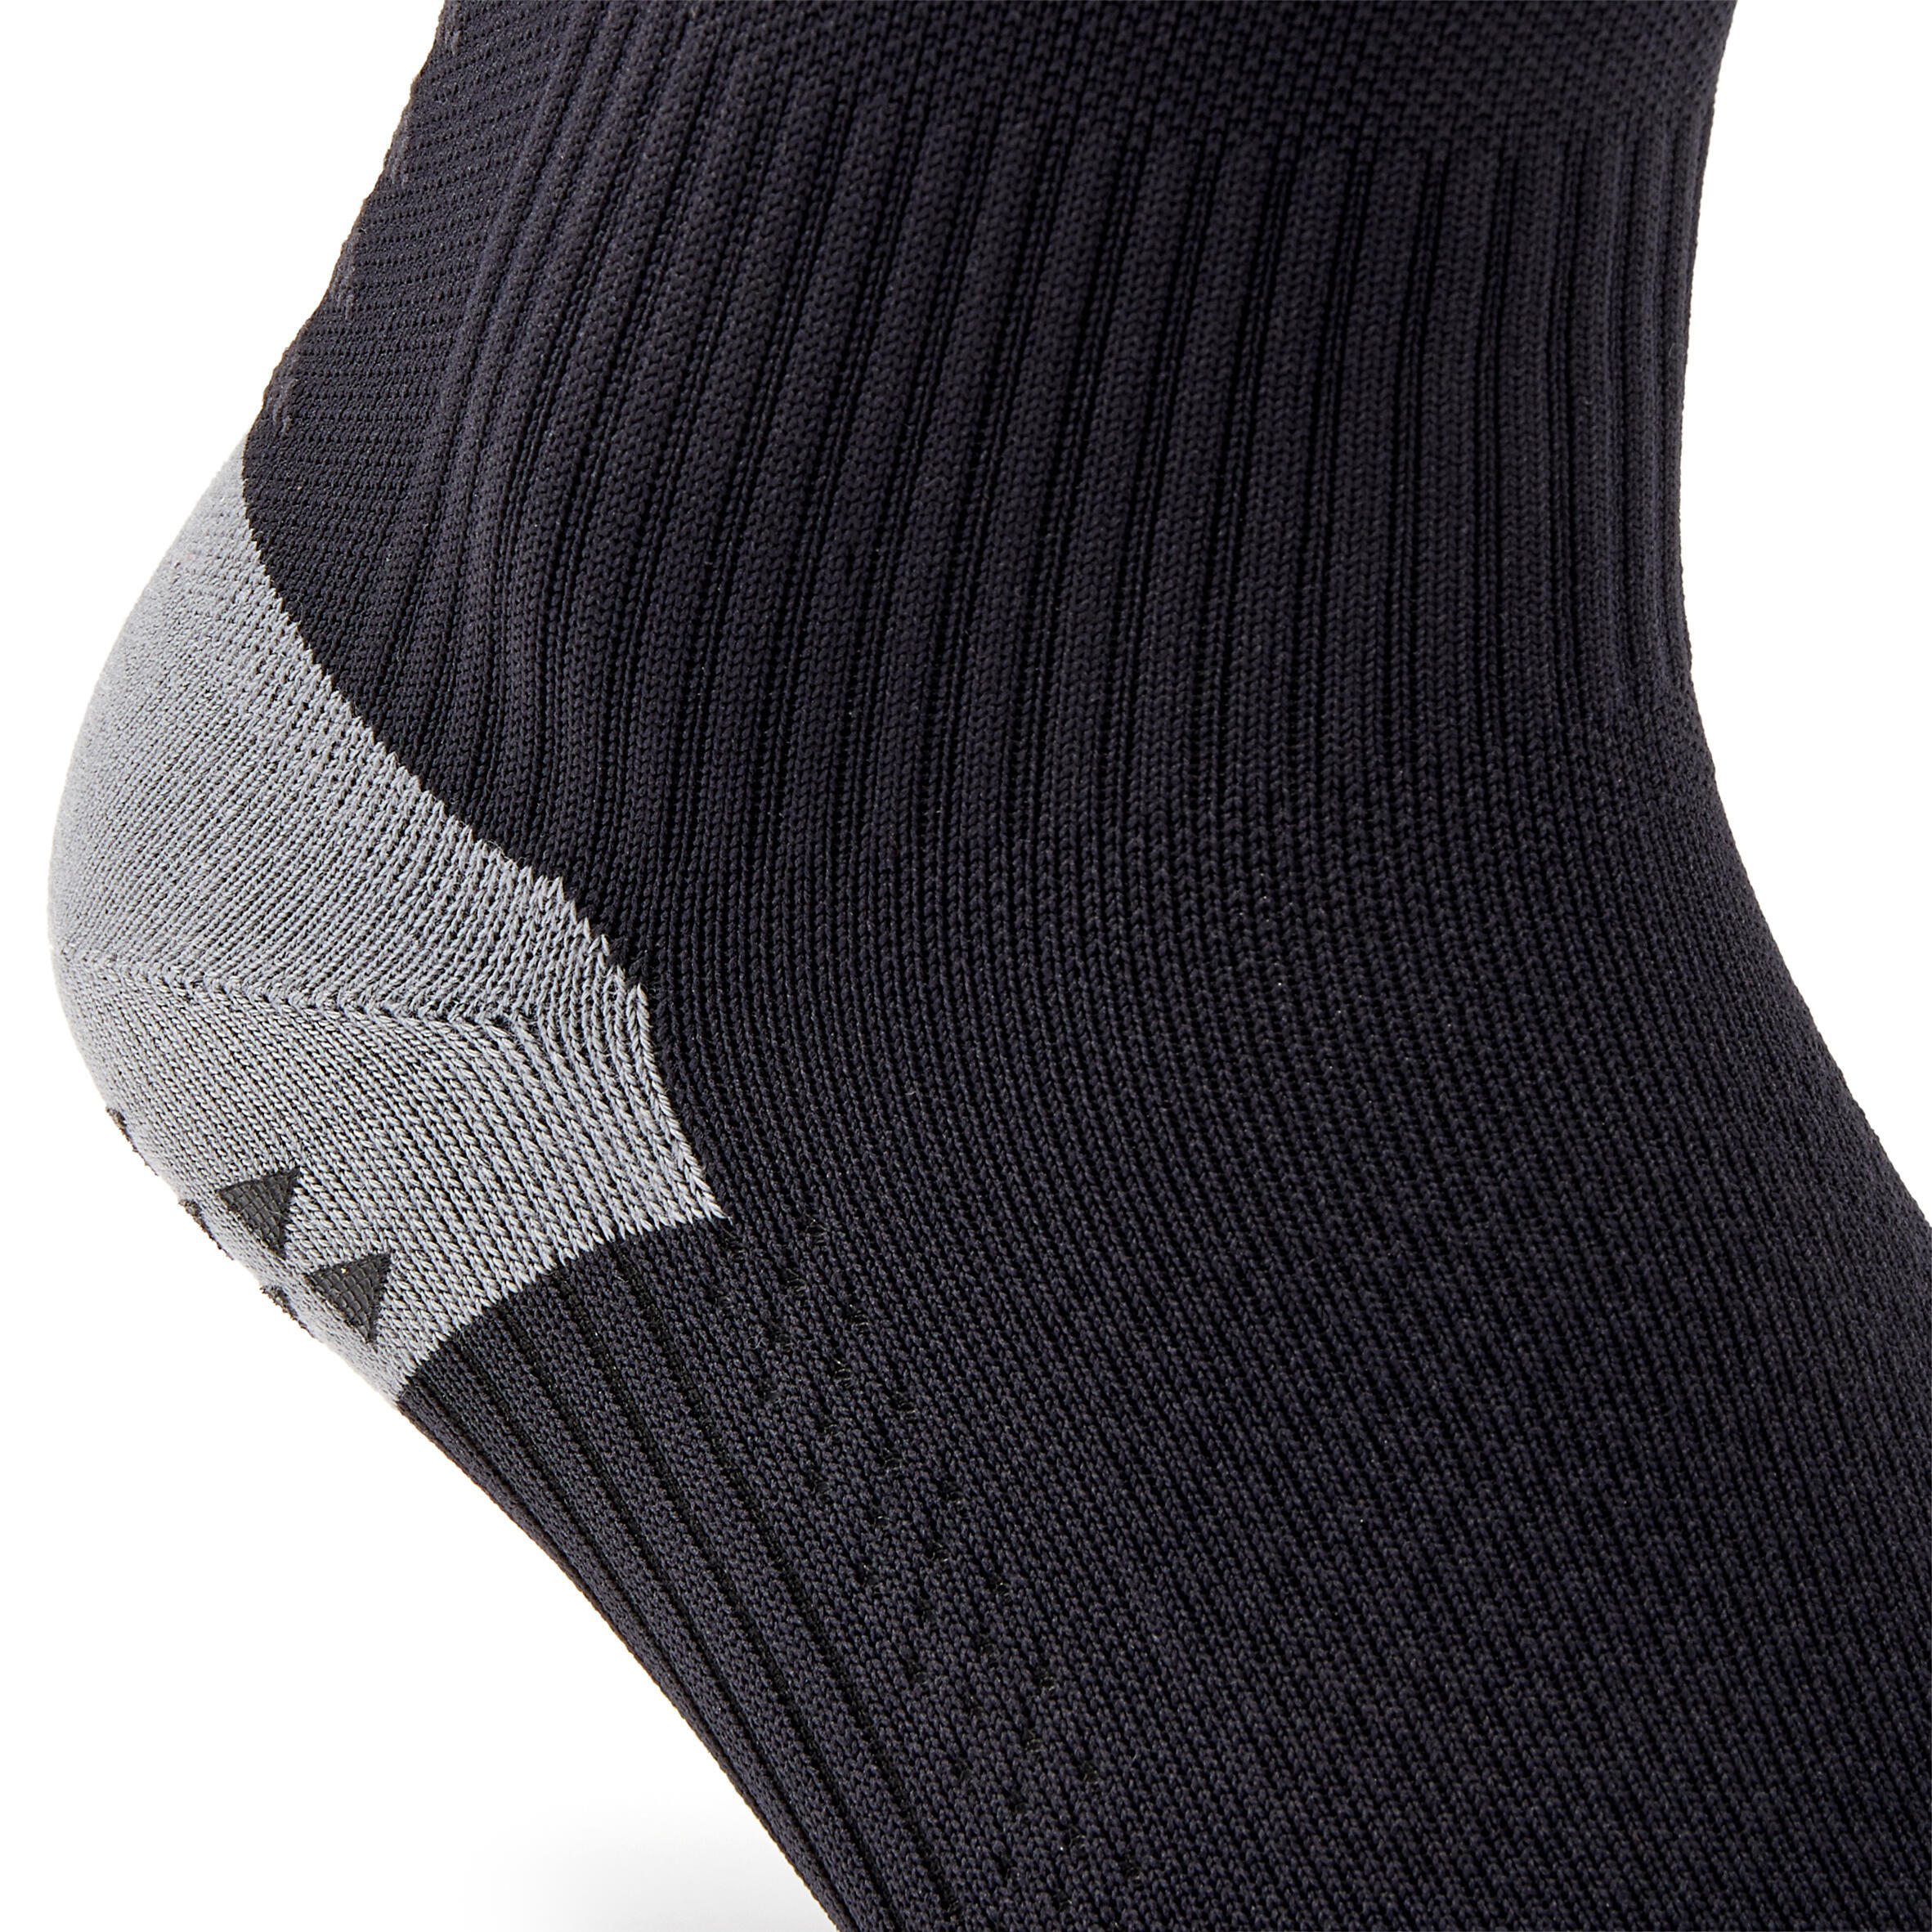 Short Grippy Football Socks Viralto MiD - Black 4/5